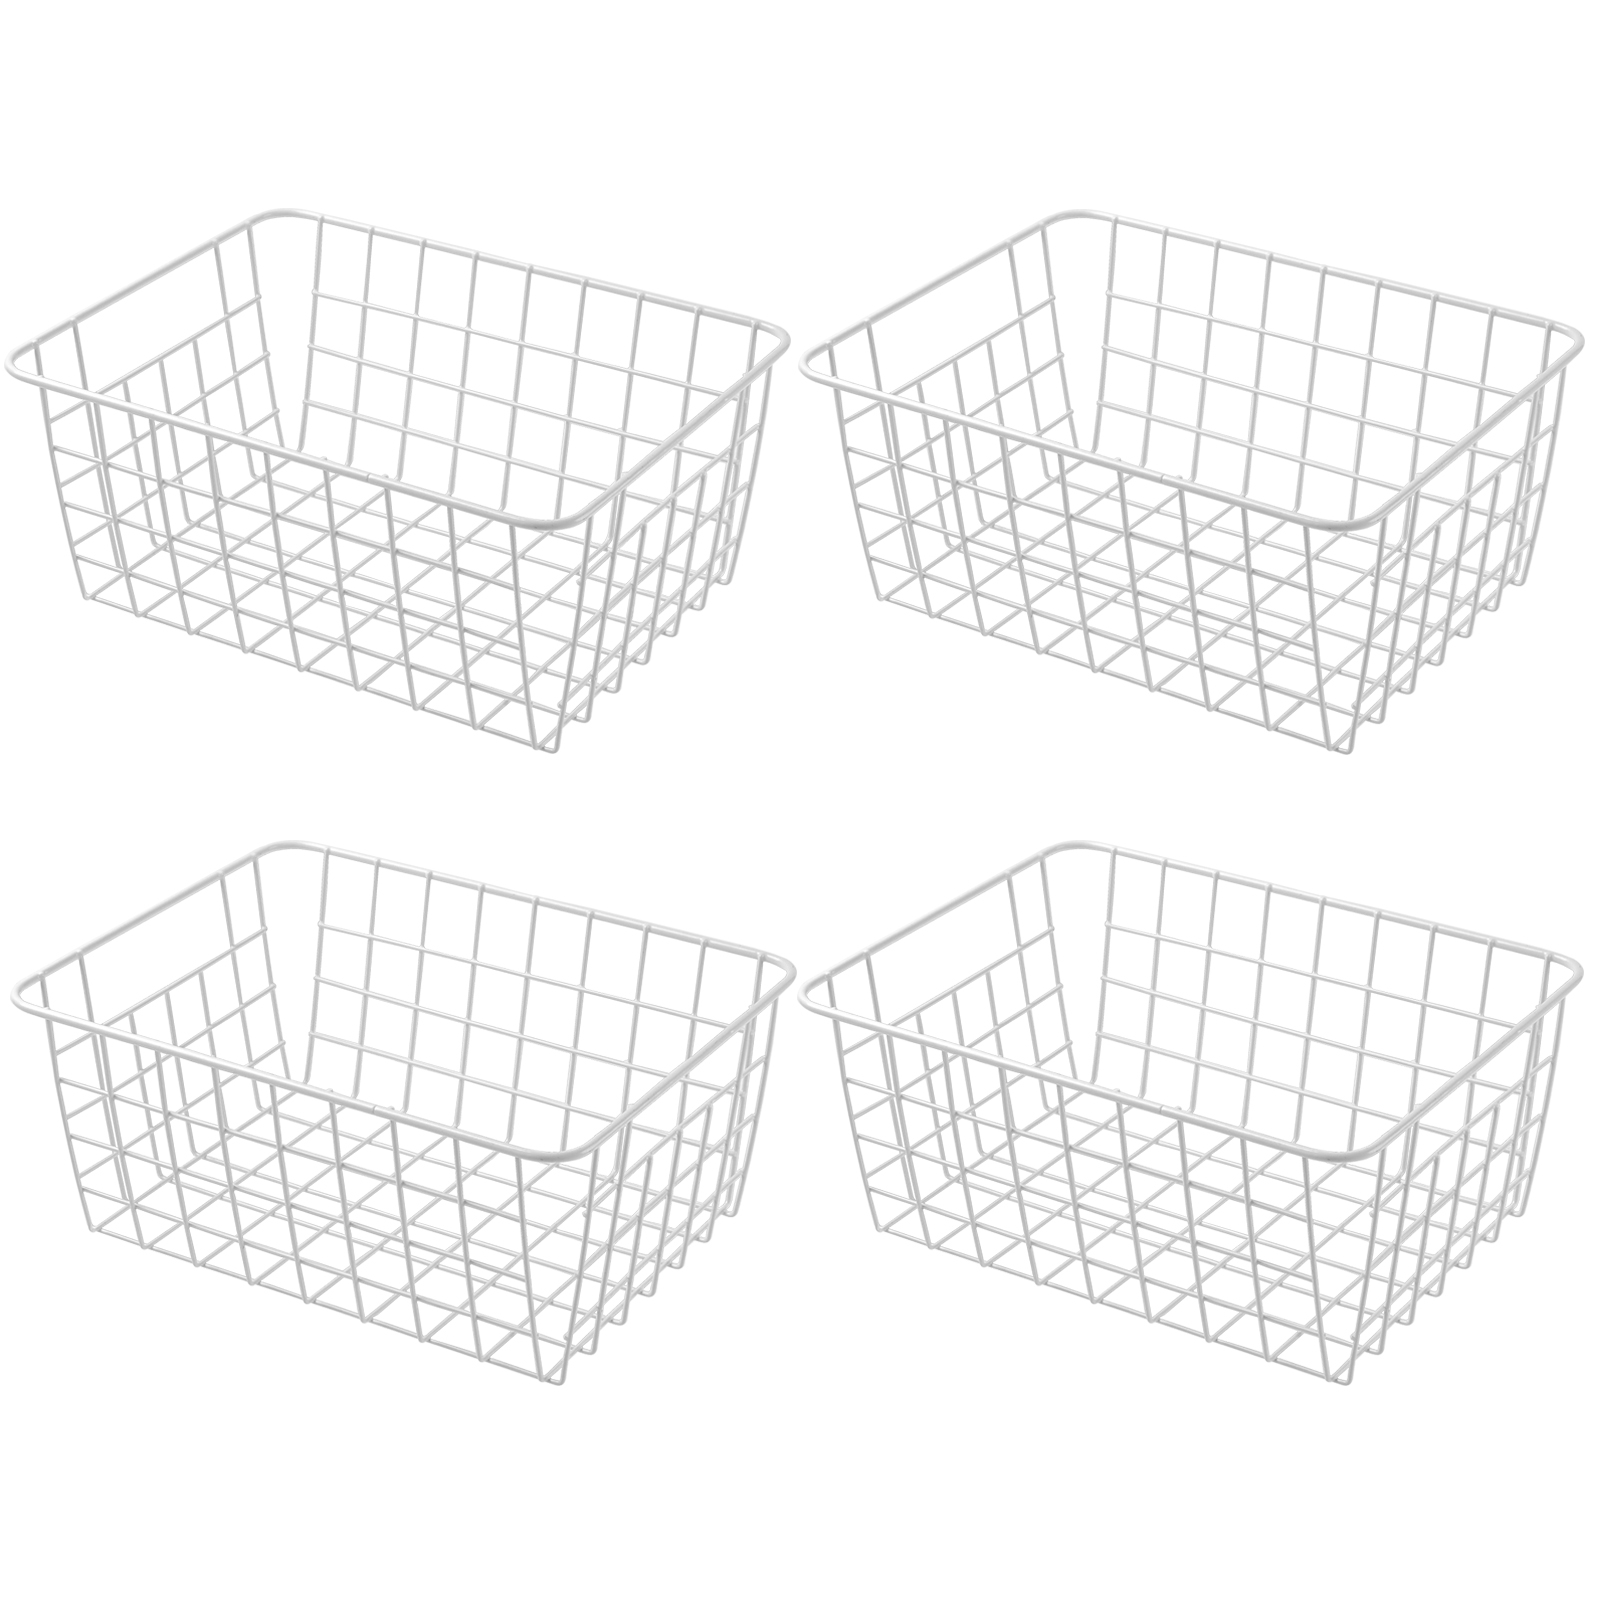 11 Upright Freezer Storage Baskets, White Wire Storage Bins Small